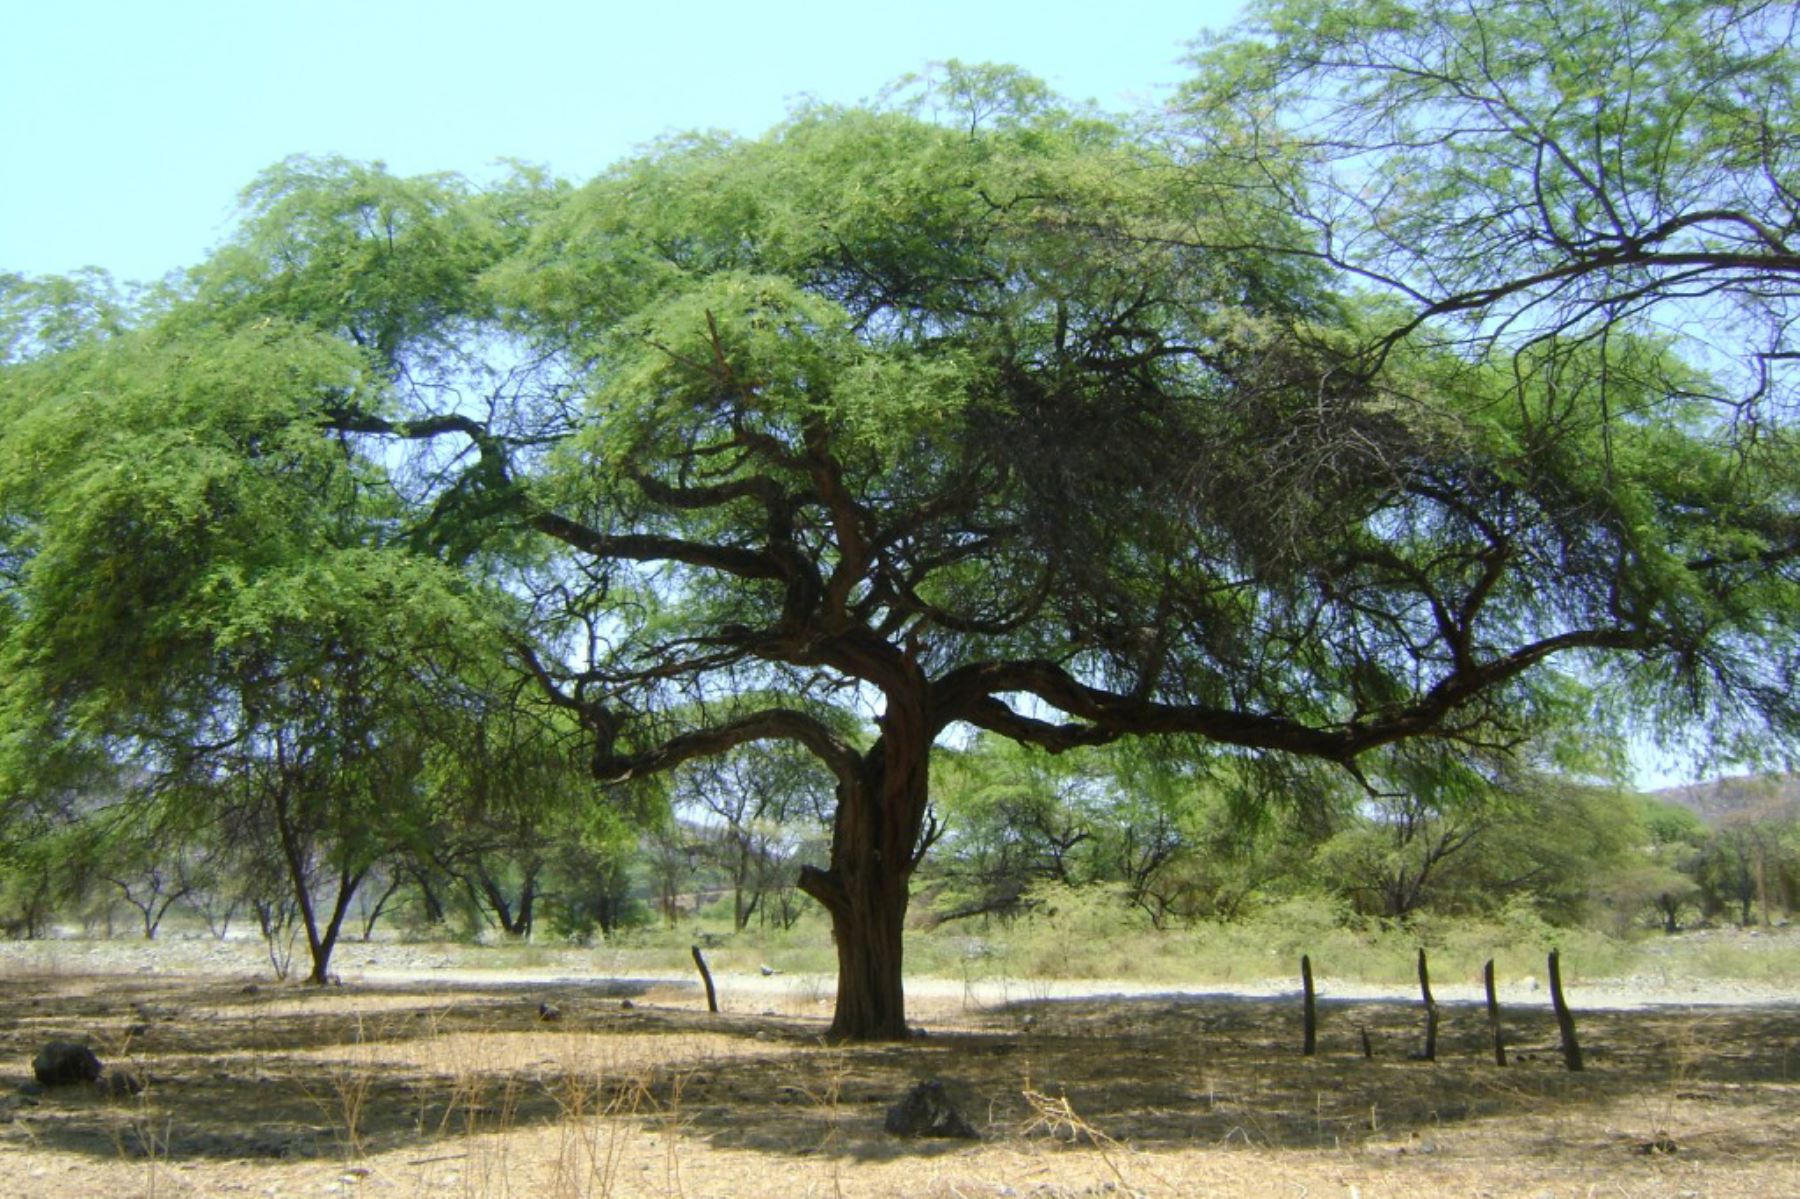 El algarrobo, especie emblemática de la costa norte que crece especialmente en los departamentos de Piura y Lambayeque, es considerado como un árbol patrimonial peruano.  ANDINA/Archivo